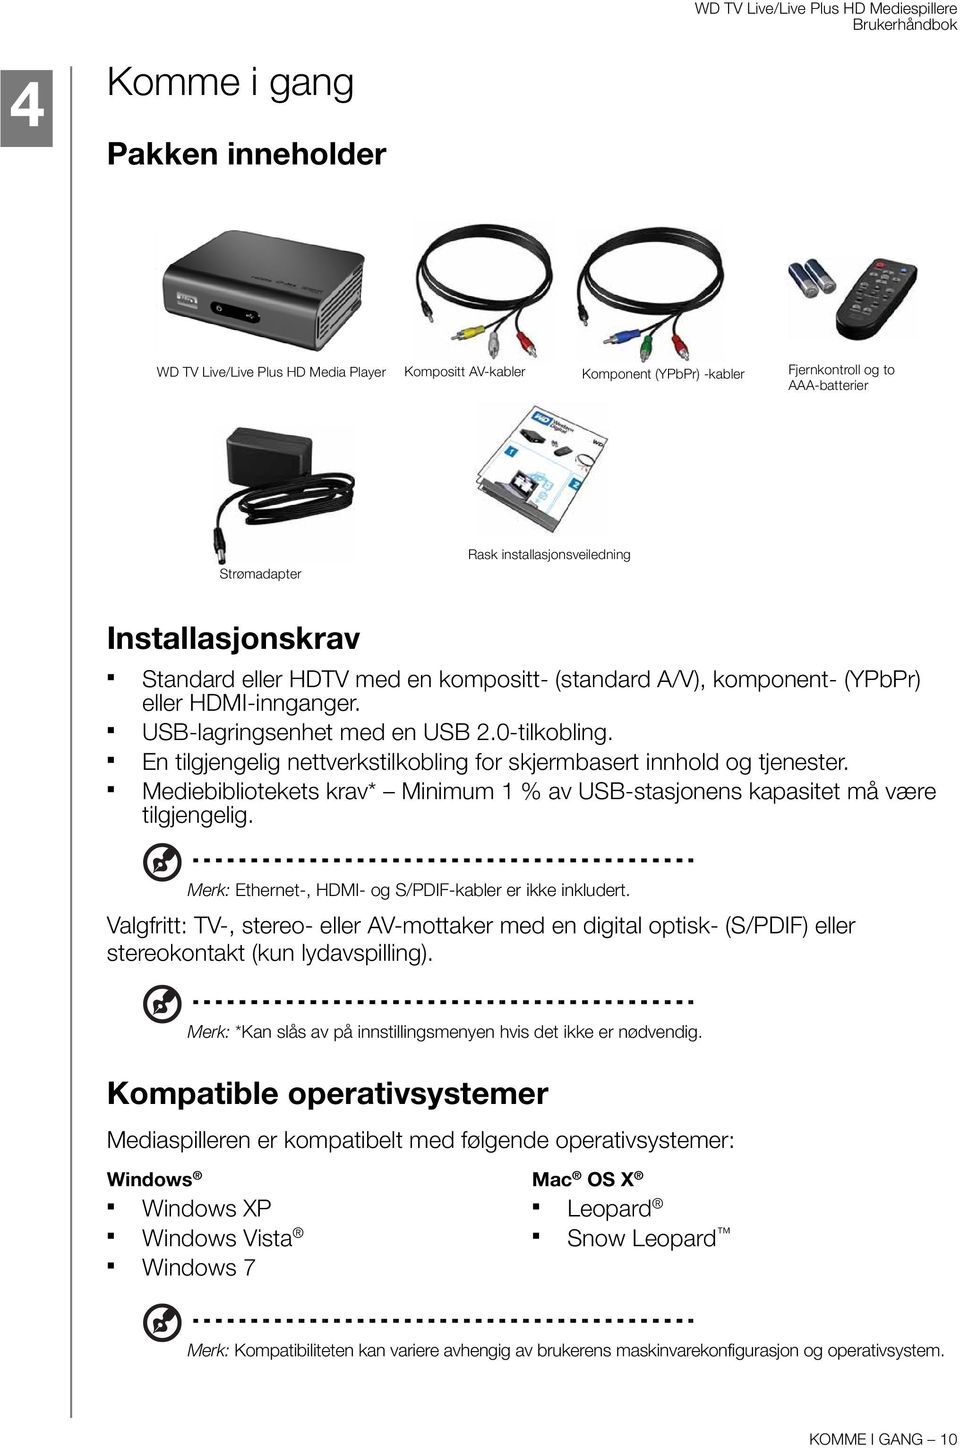 En tilgjengelig nettverkstilkobling for skjermbasert innhold og tjenester. Mediebibliotekets krav* Minimum 1 % av USB-stasjonens kapasitet må være tilgjengelig.